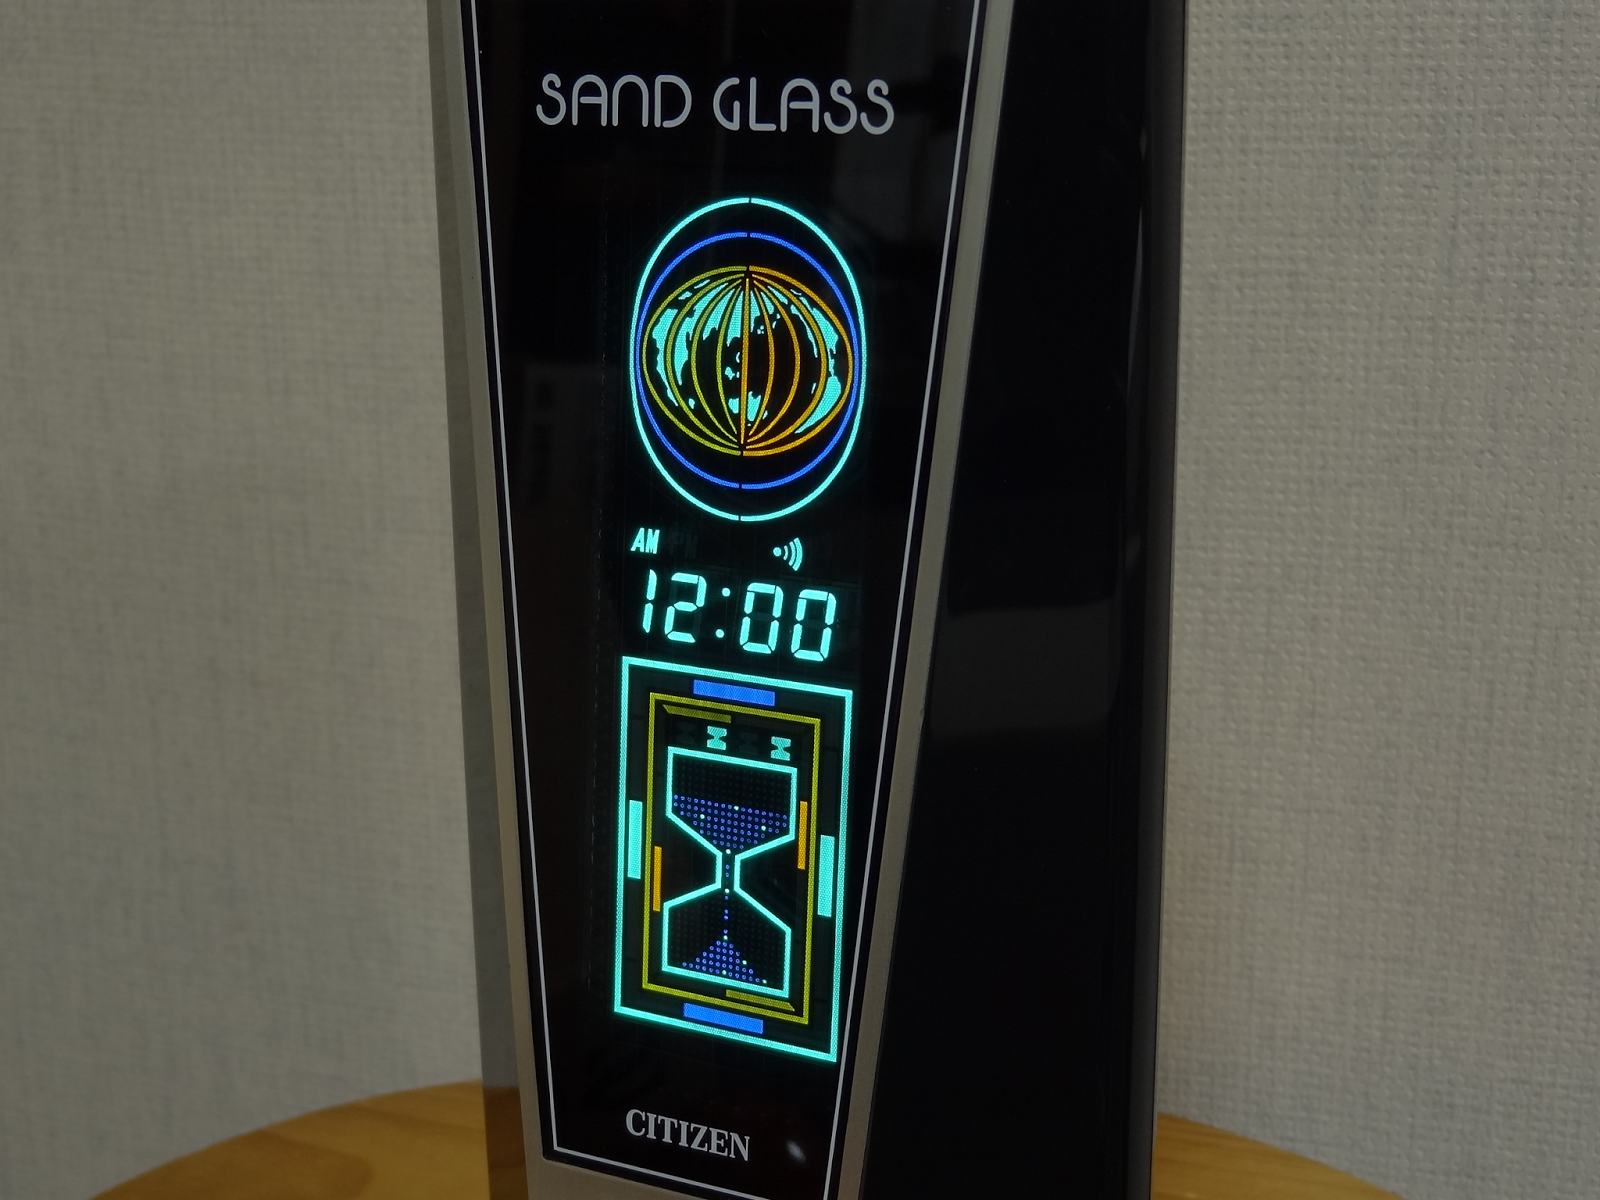 期間限定特別価格 citizen sand glass グラフィッククロック 